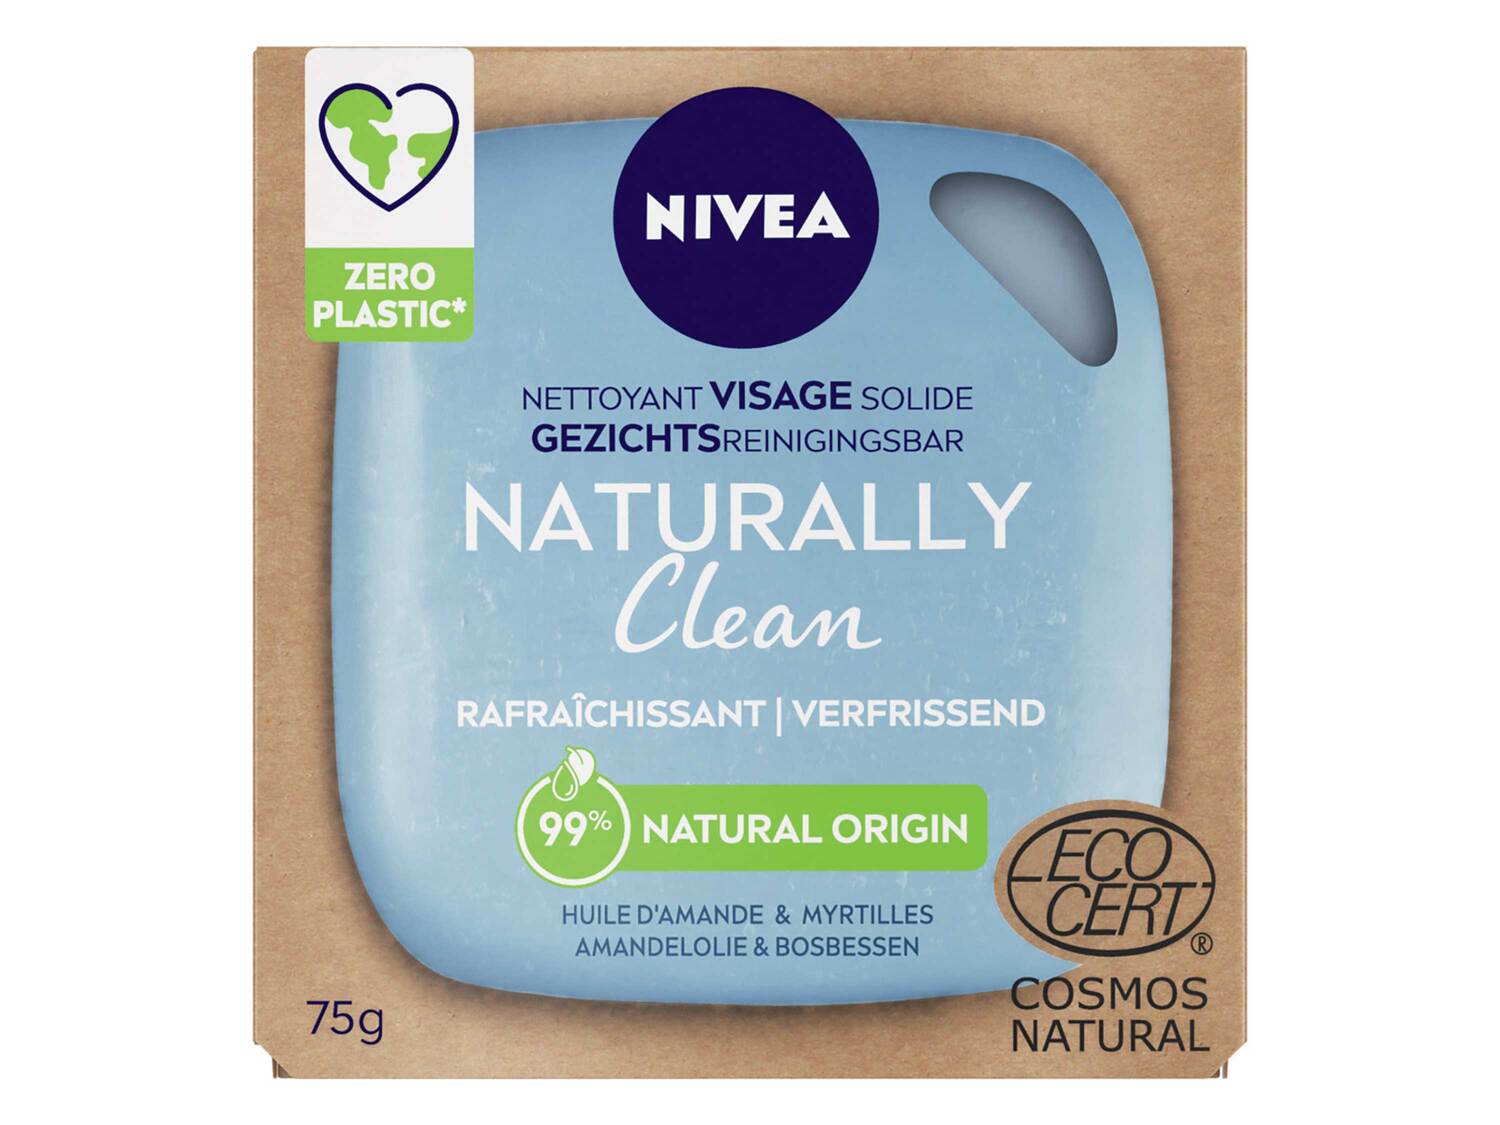 Nivea Naturally Clean savon solide , le prix 3.50 €  
-  Variétés au choix